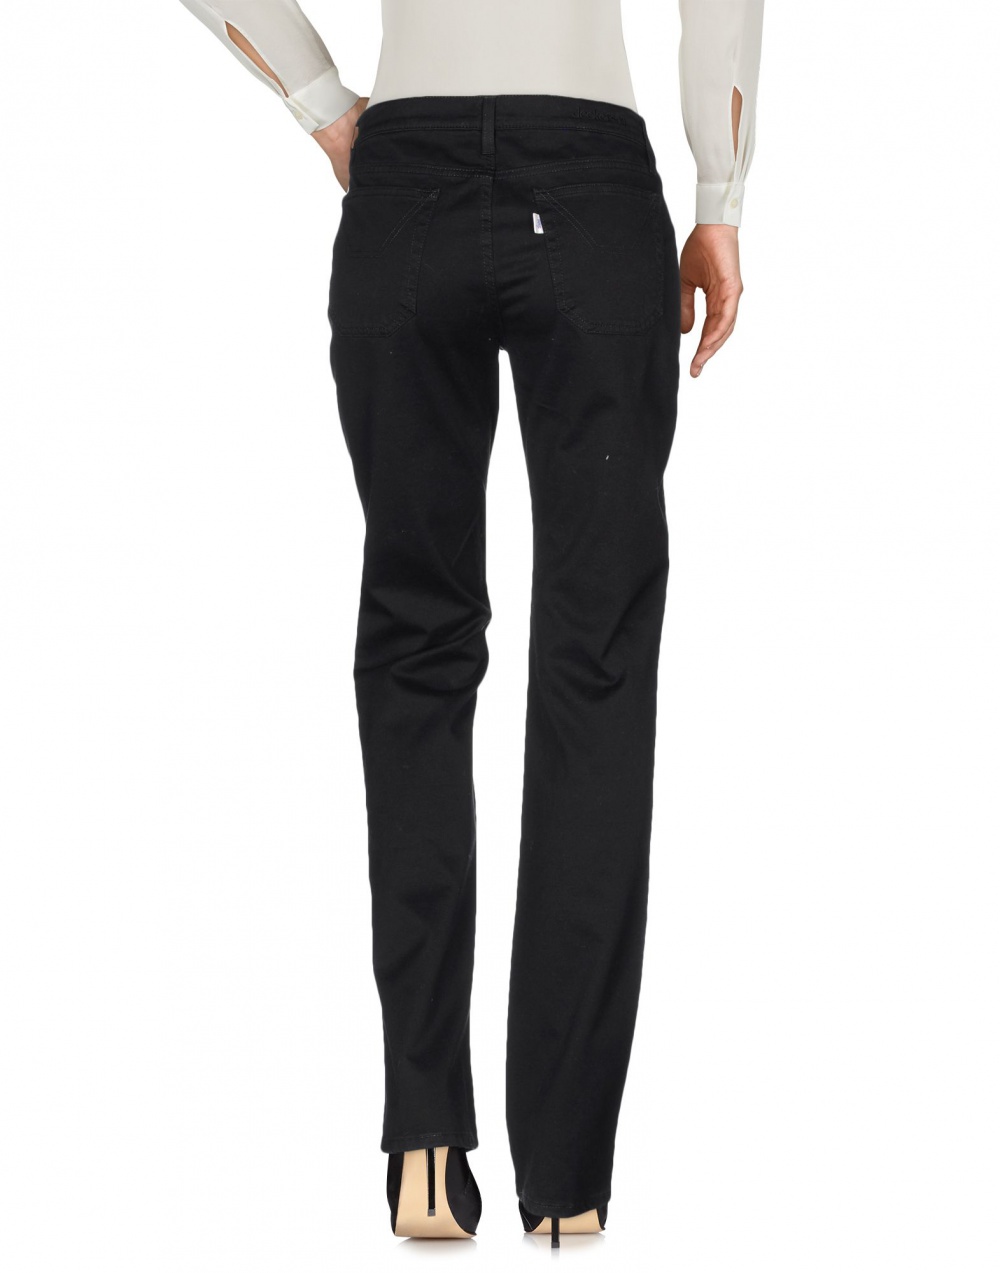 Jeckerson брюки (джинсовые брюки) 30й размер на 46-48, новые